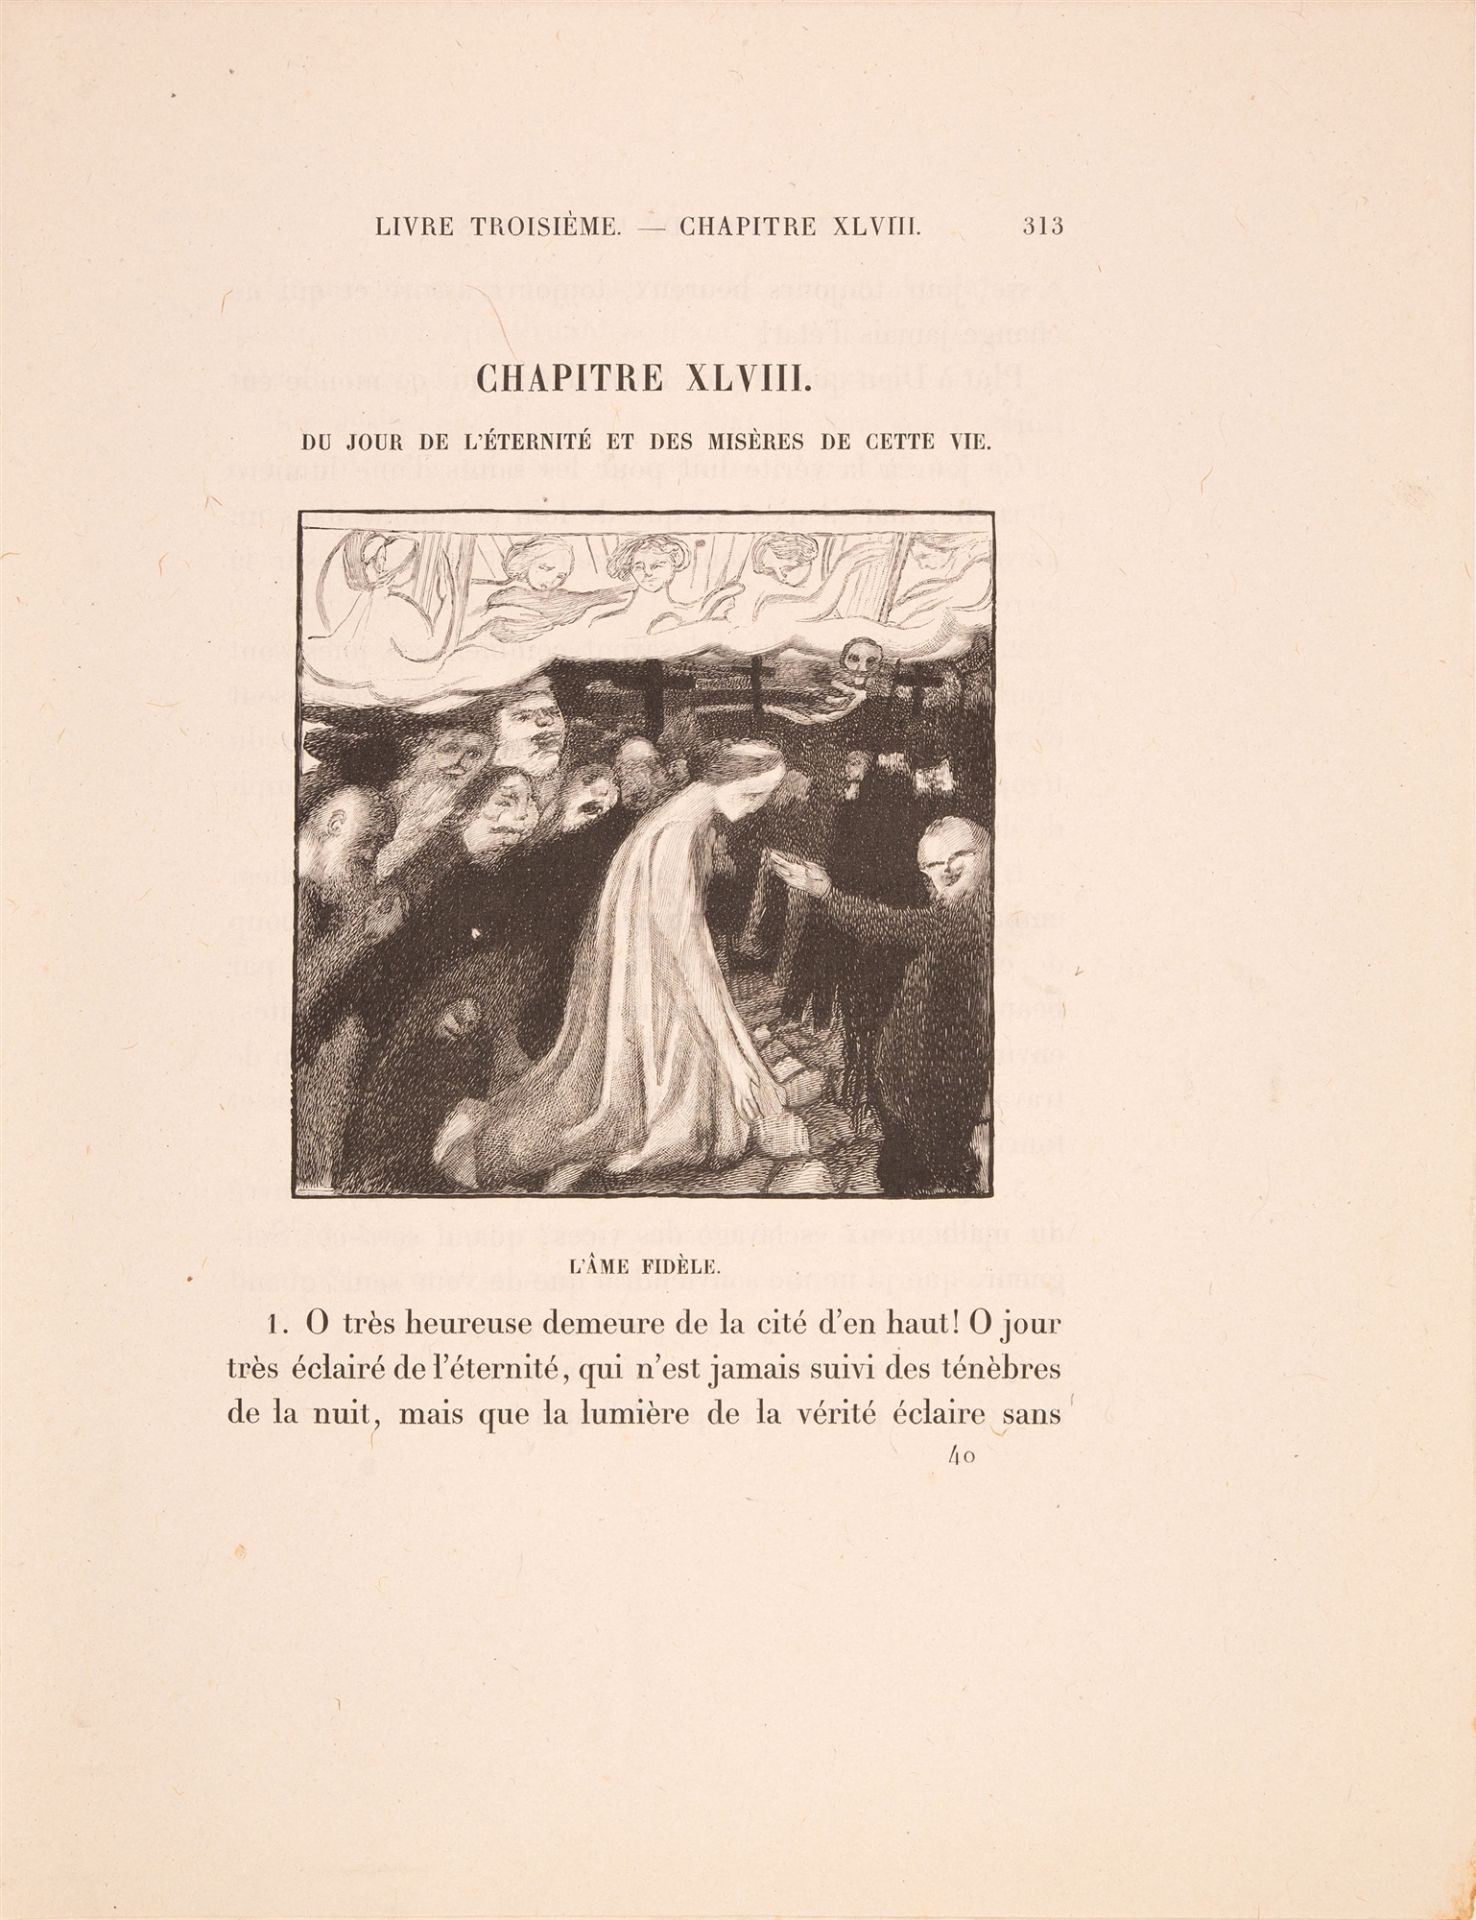 M. Denis / T. v. Kempis, L'imitation de Jésus-Christ. 2 Bde. Paris 1903. - Image 2 of 3